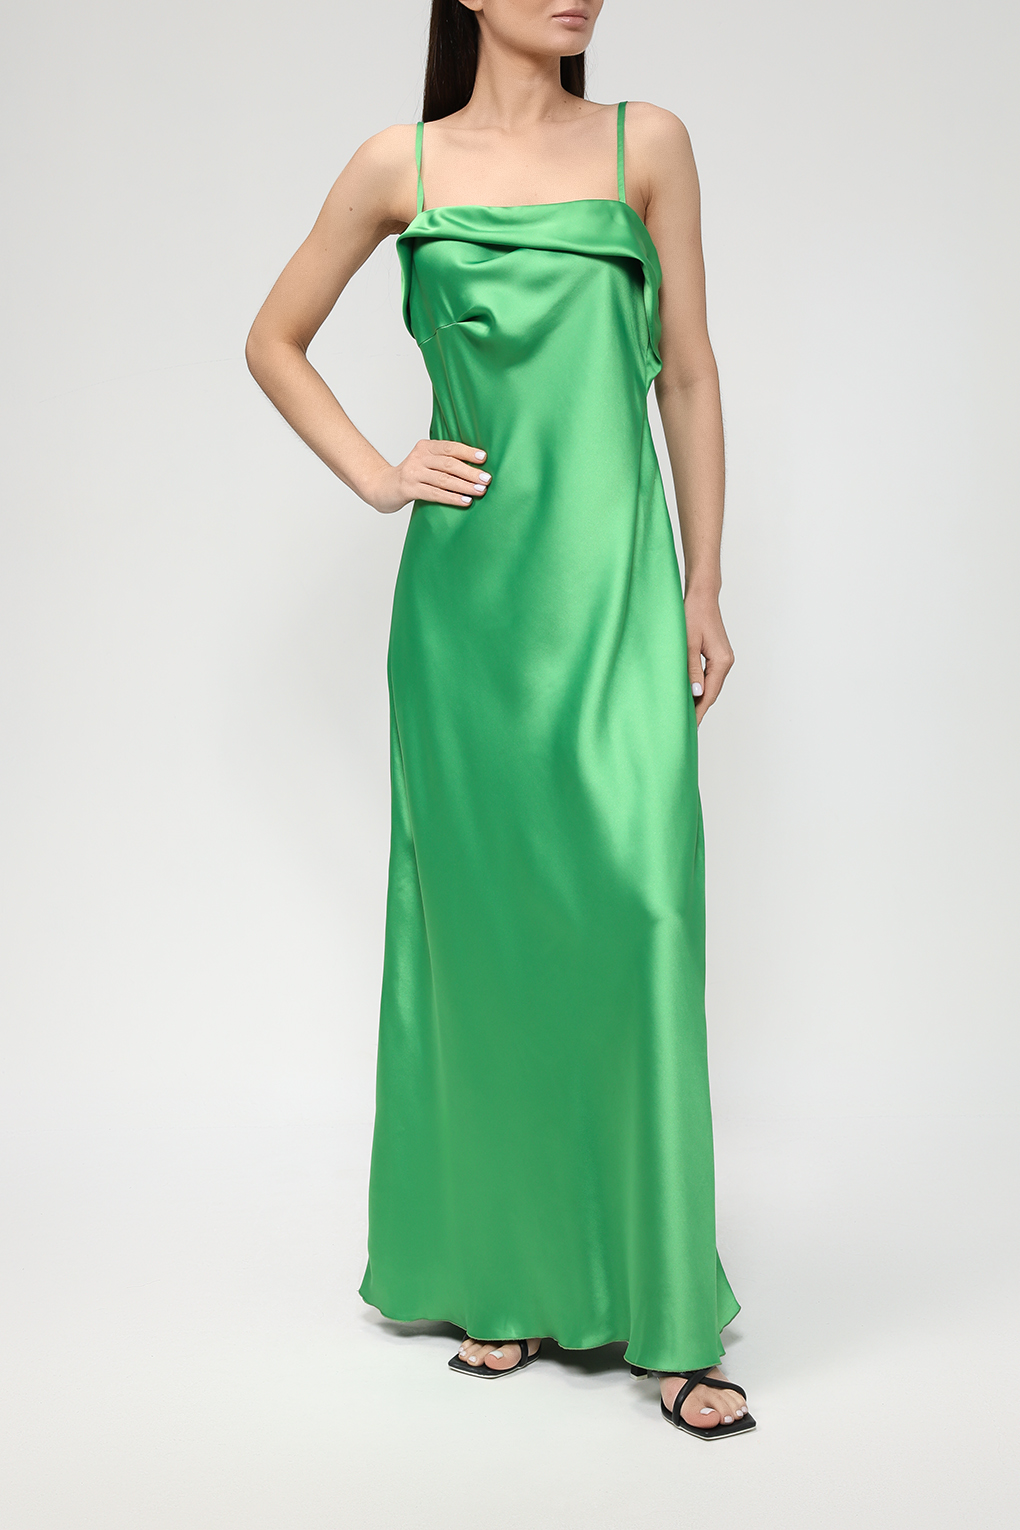 Платье женское Belucci BL23045331-004 зеленое XL